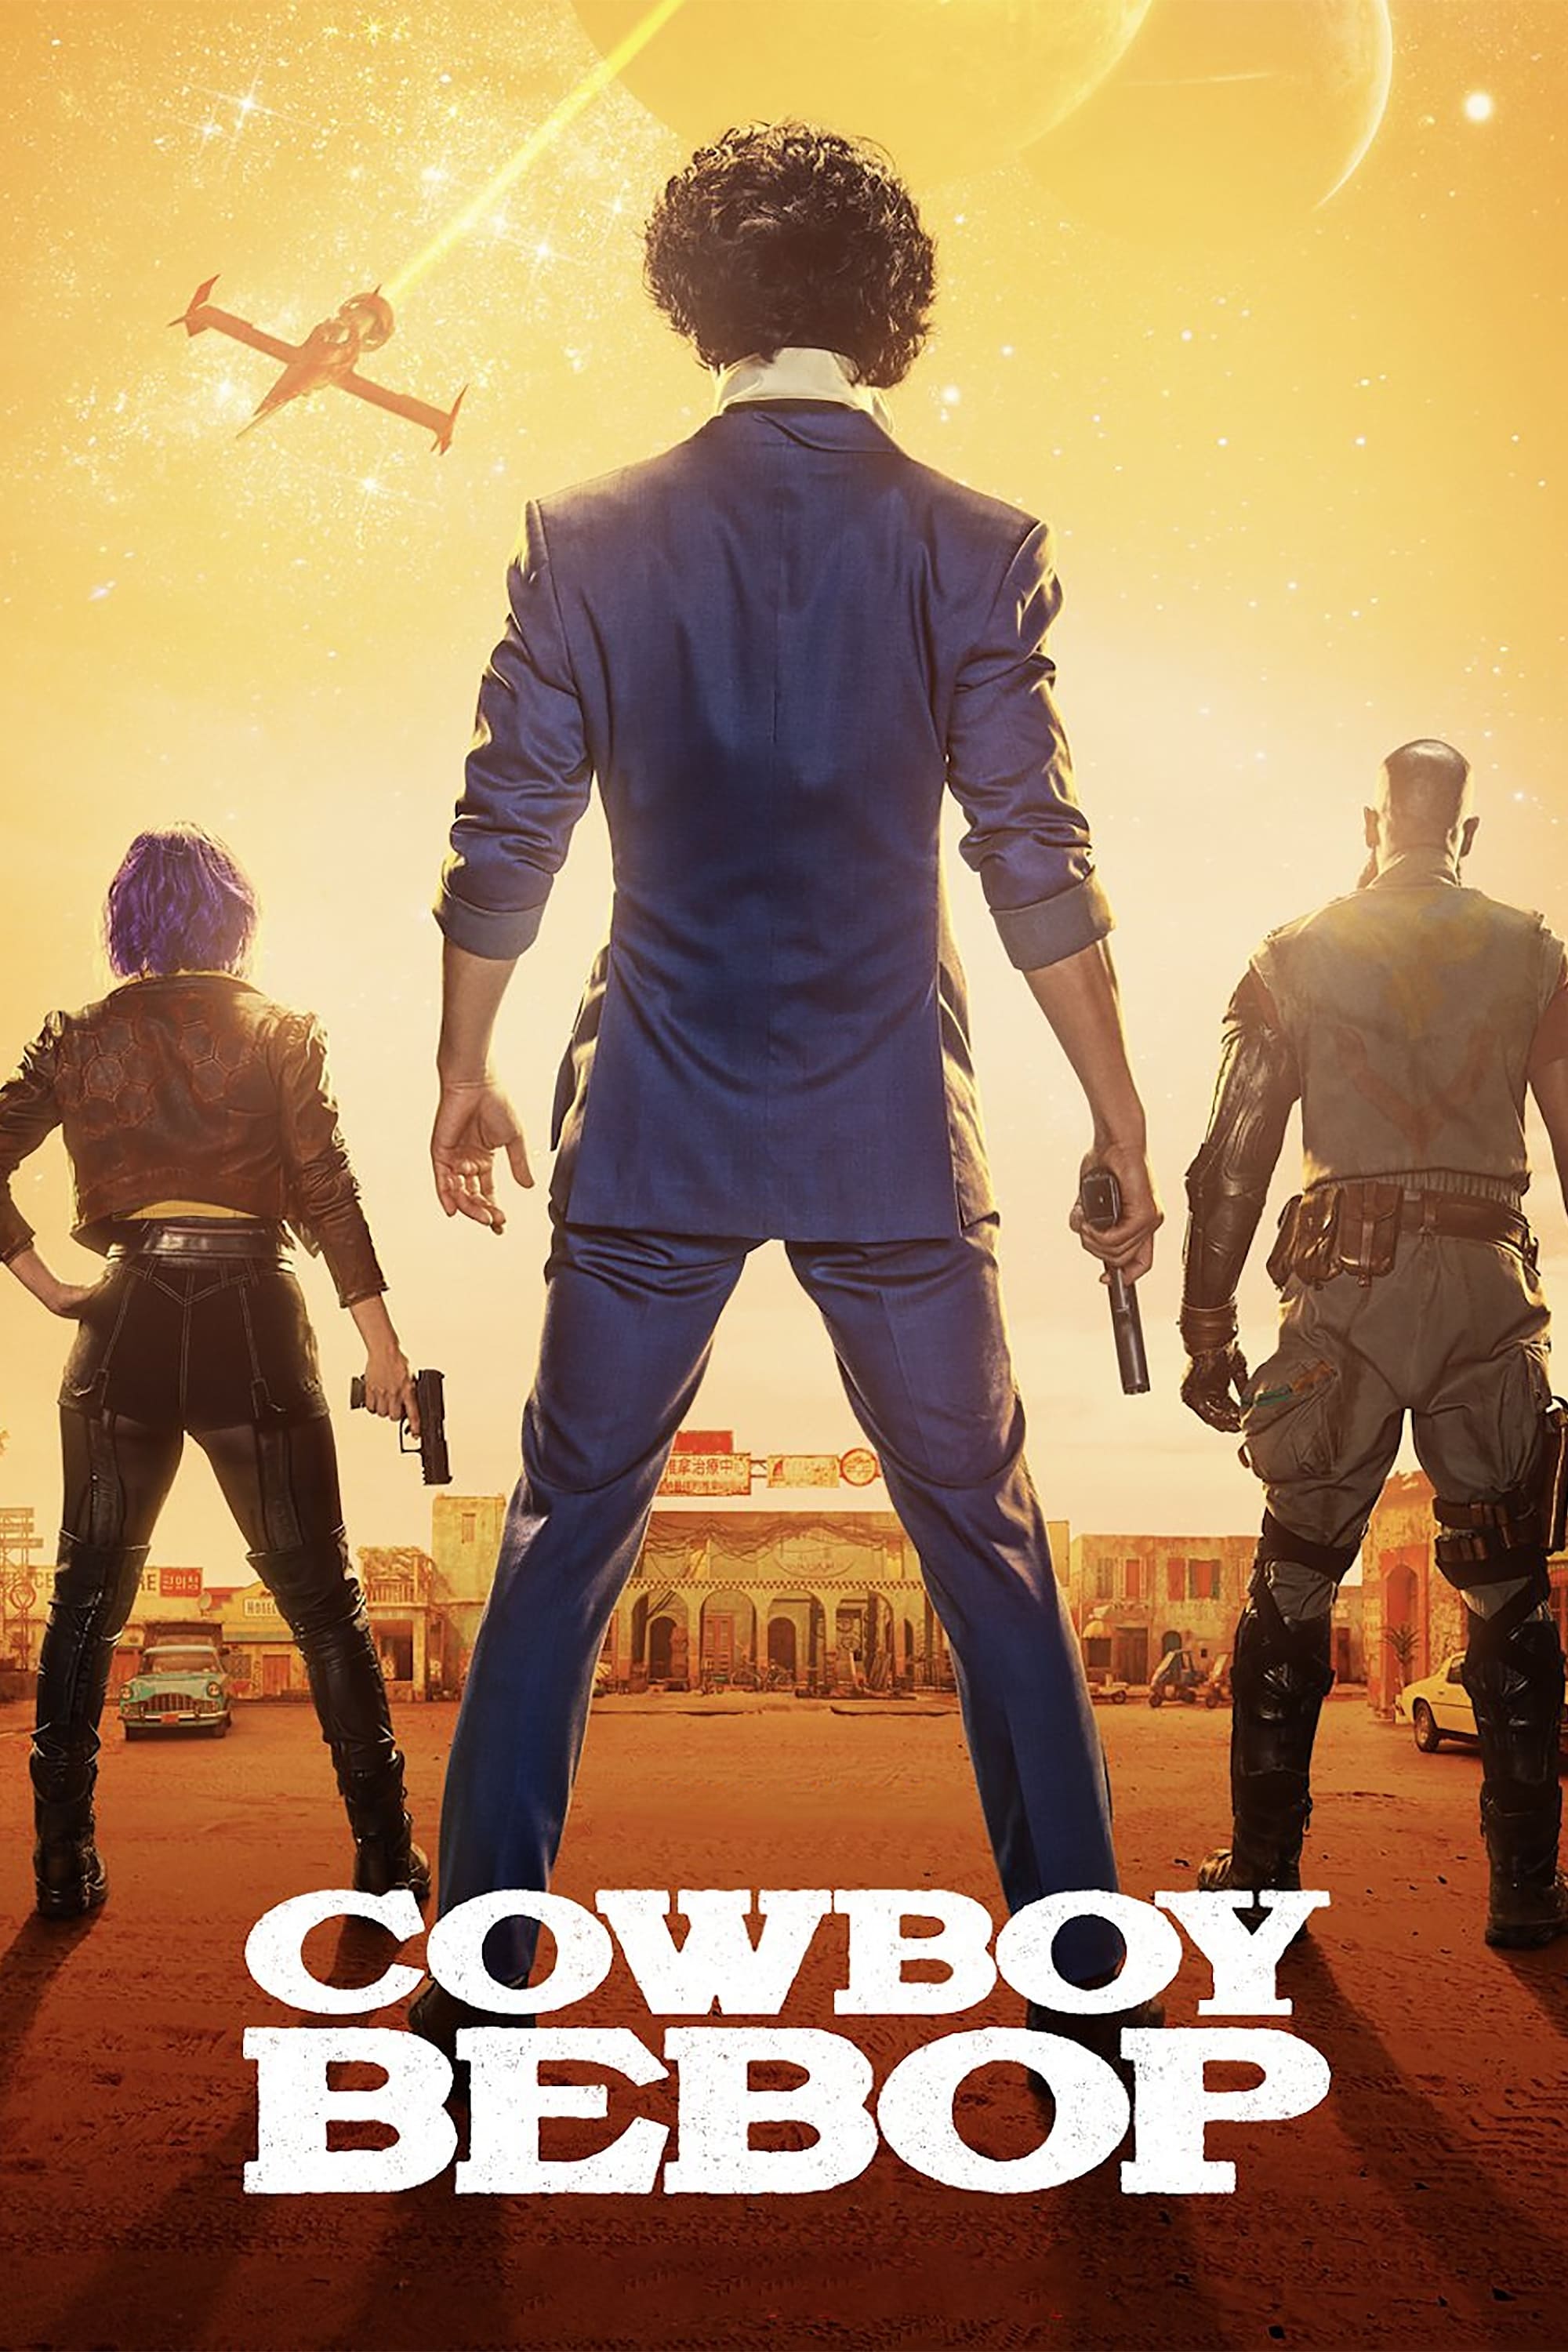 Cowboy Bebop TV Shows About Action